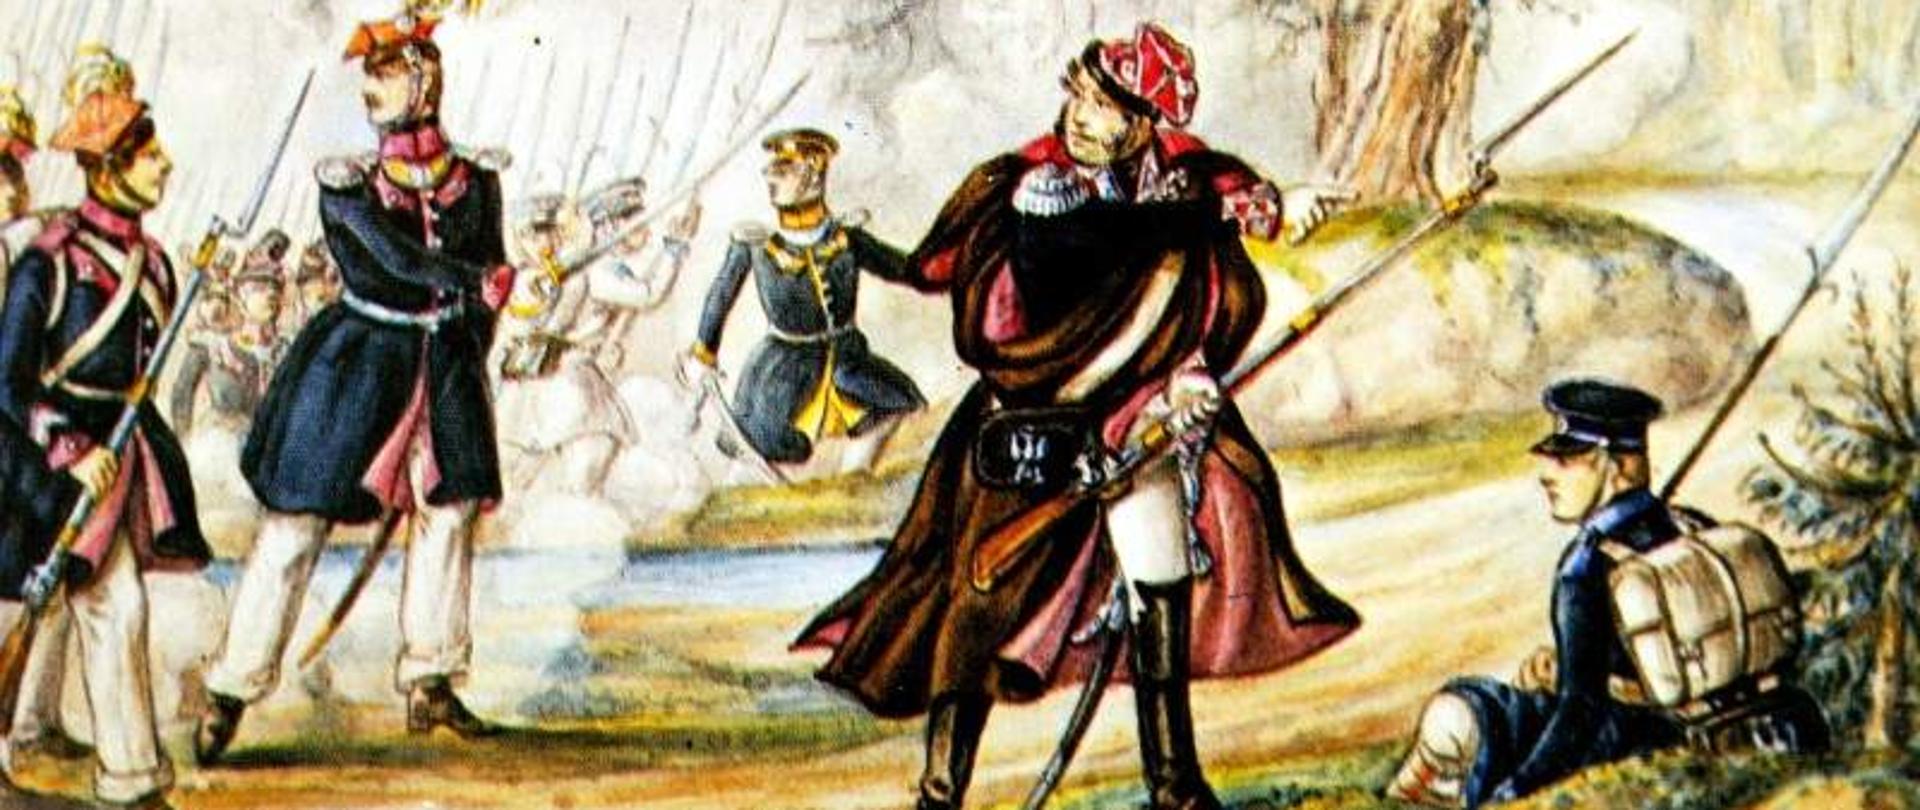 Juliusz hrabia Małachowski na obrazie